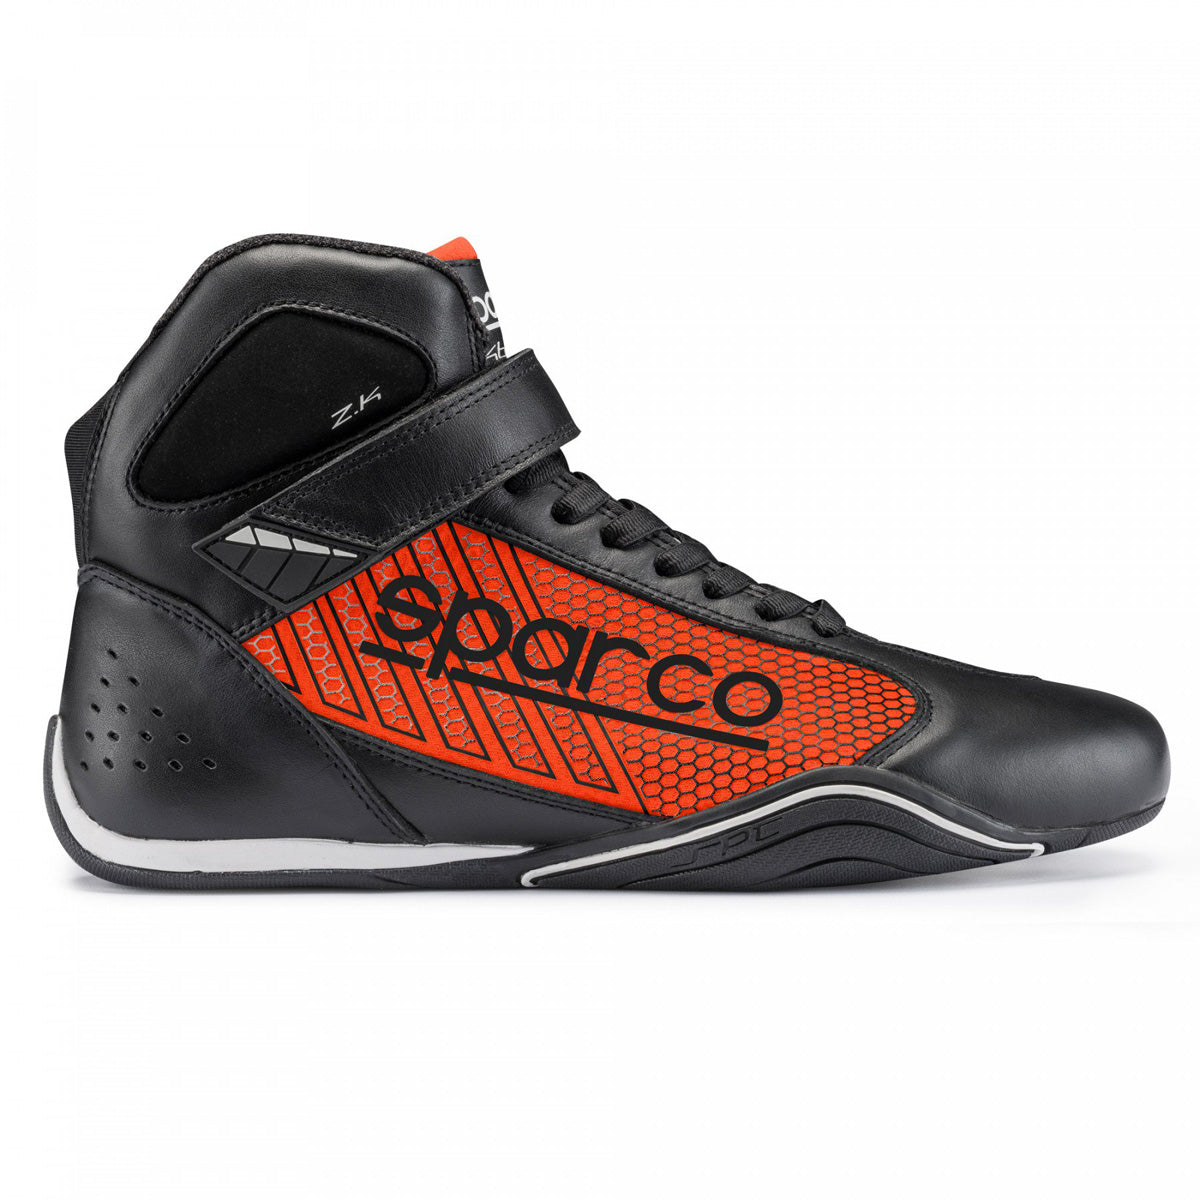 Sparco Omega KB-6 Karting Shoe